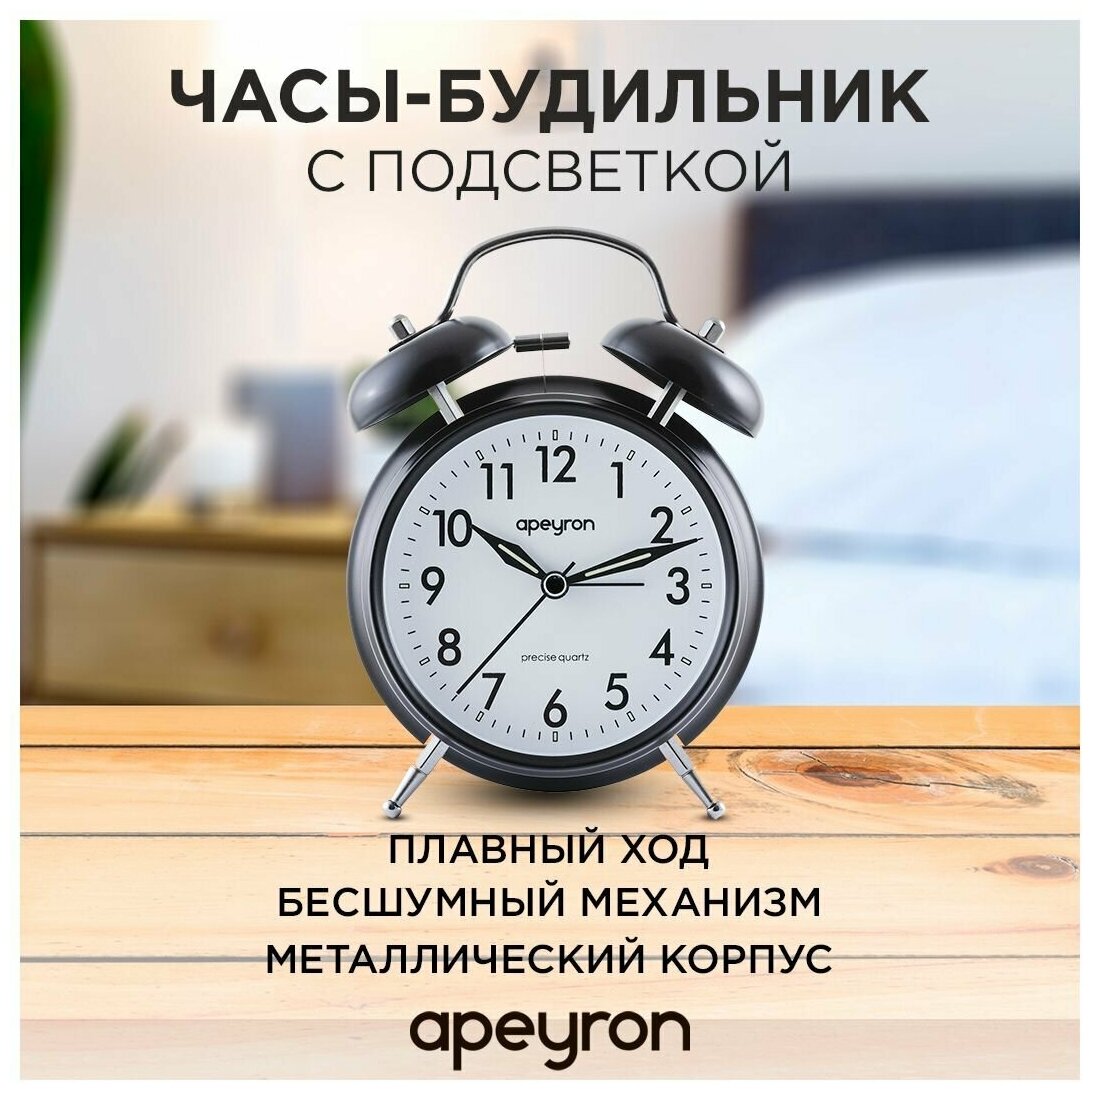 Часы-будильник с подсветкой Apeyron 15.9х11.5 см арабский циферблат бесшумный механизм с плавным ходом белый матовый MLT2207-256-2